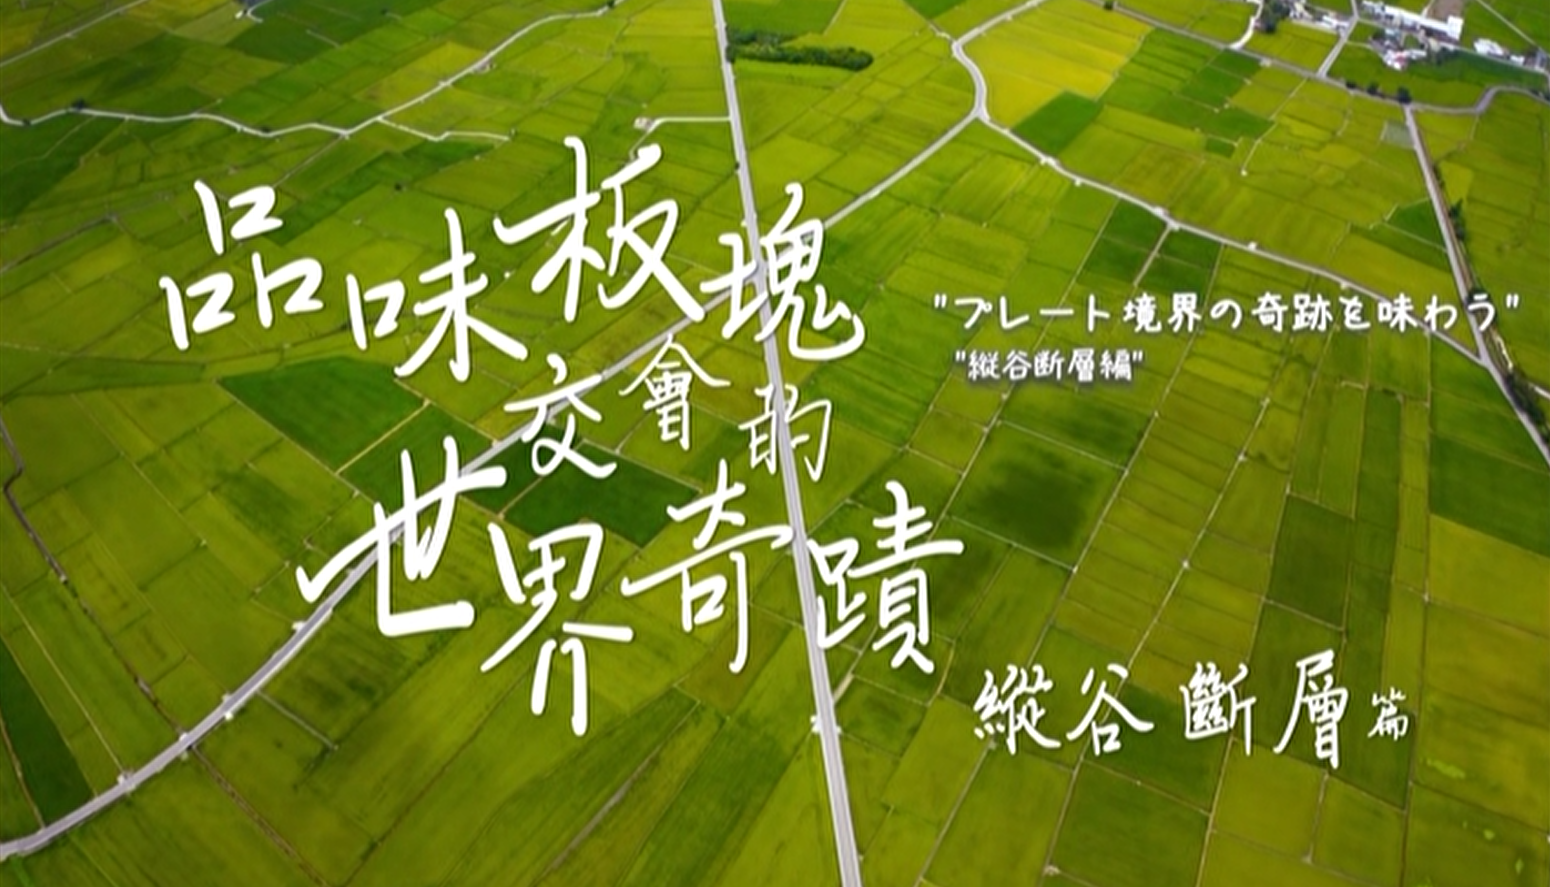 花東縱谷地質地景觀光宣傳影片：品味板塊交會的世界奇蹟─縱谷斷層篇 (日文)